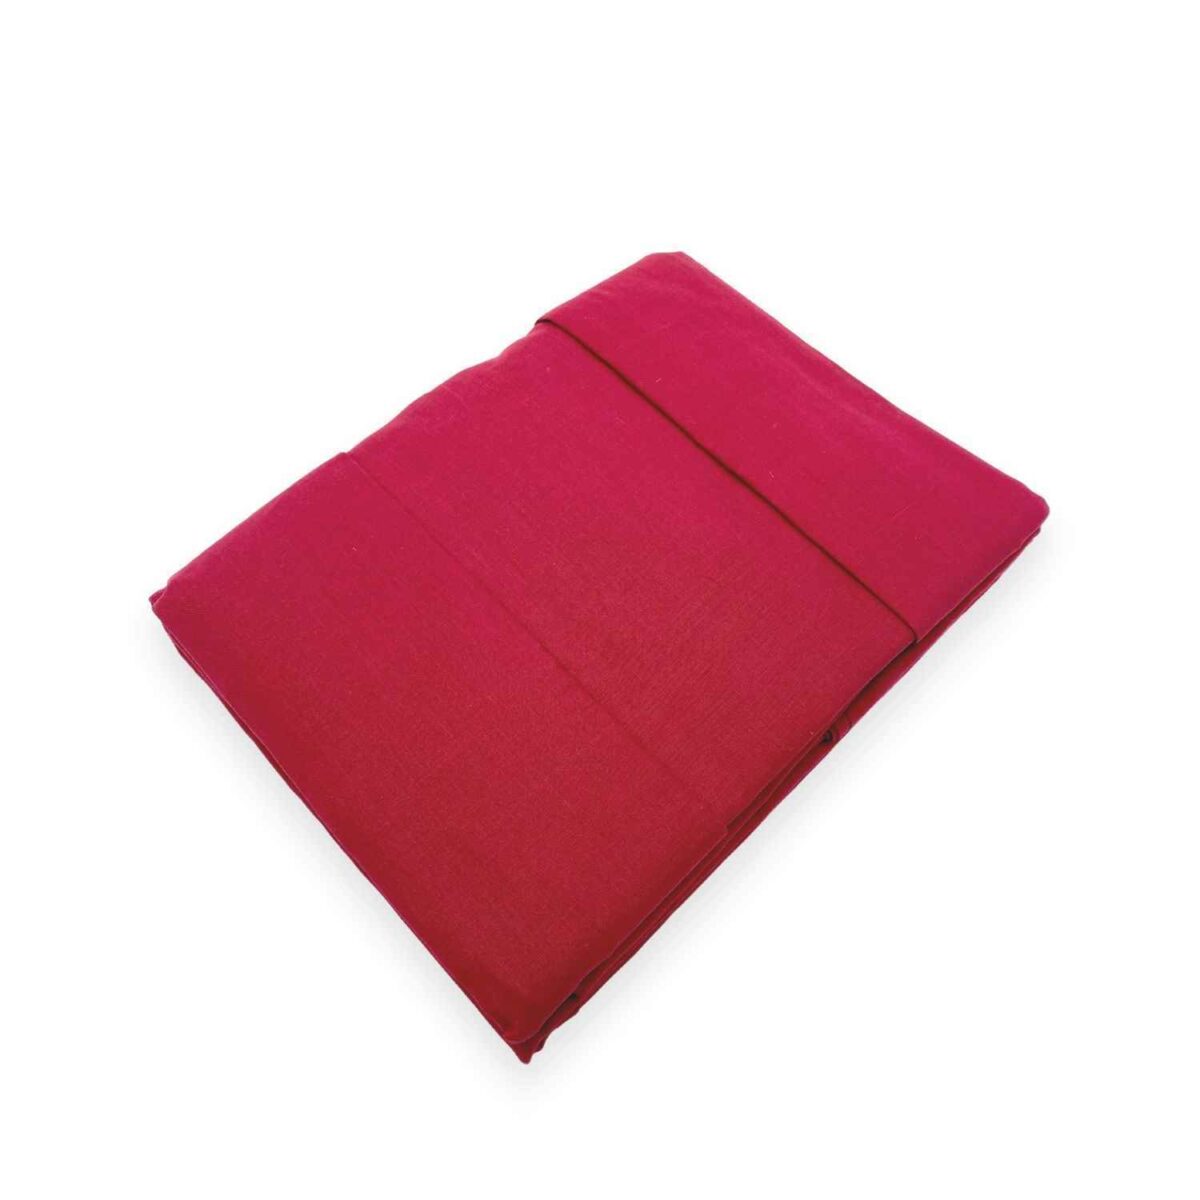 bordeaux-coloratissimi-completo-lenzuola-puro-cotone-tinta-unita-rosso-granata-fold